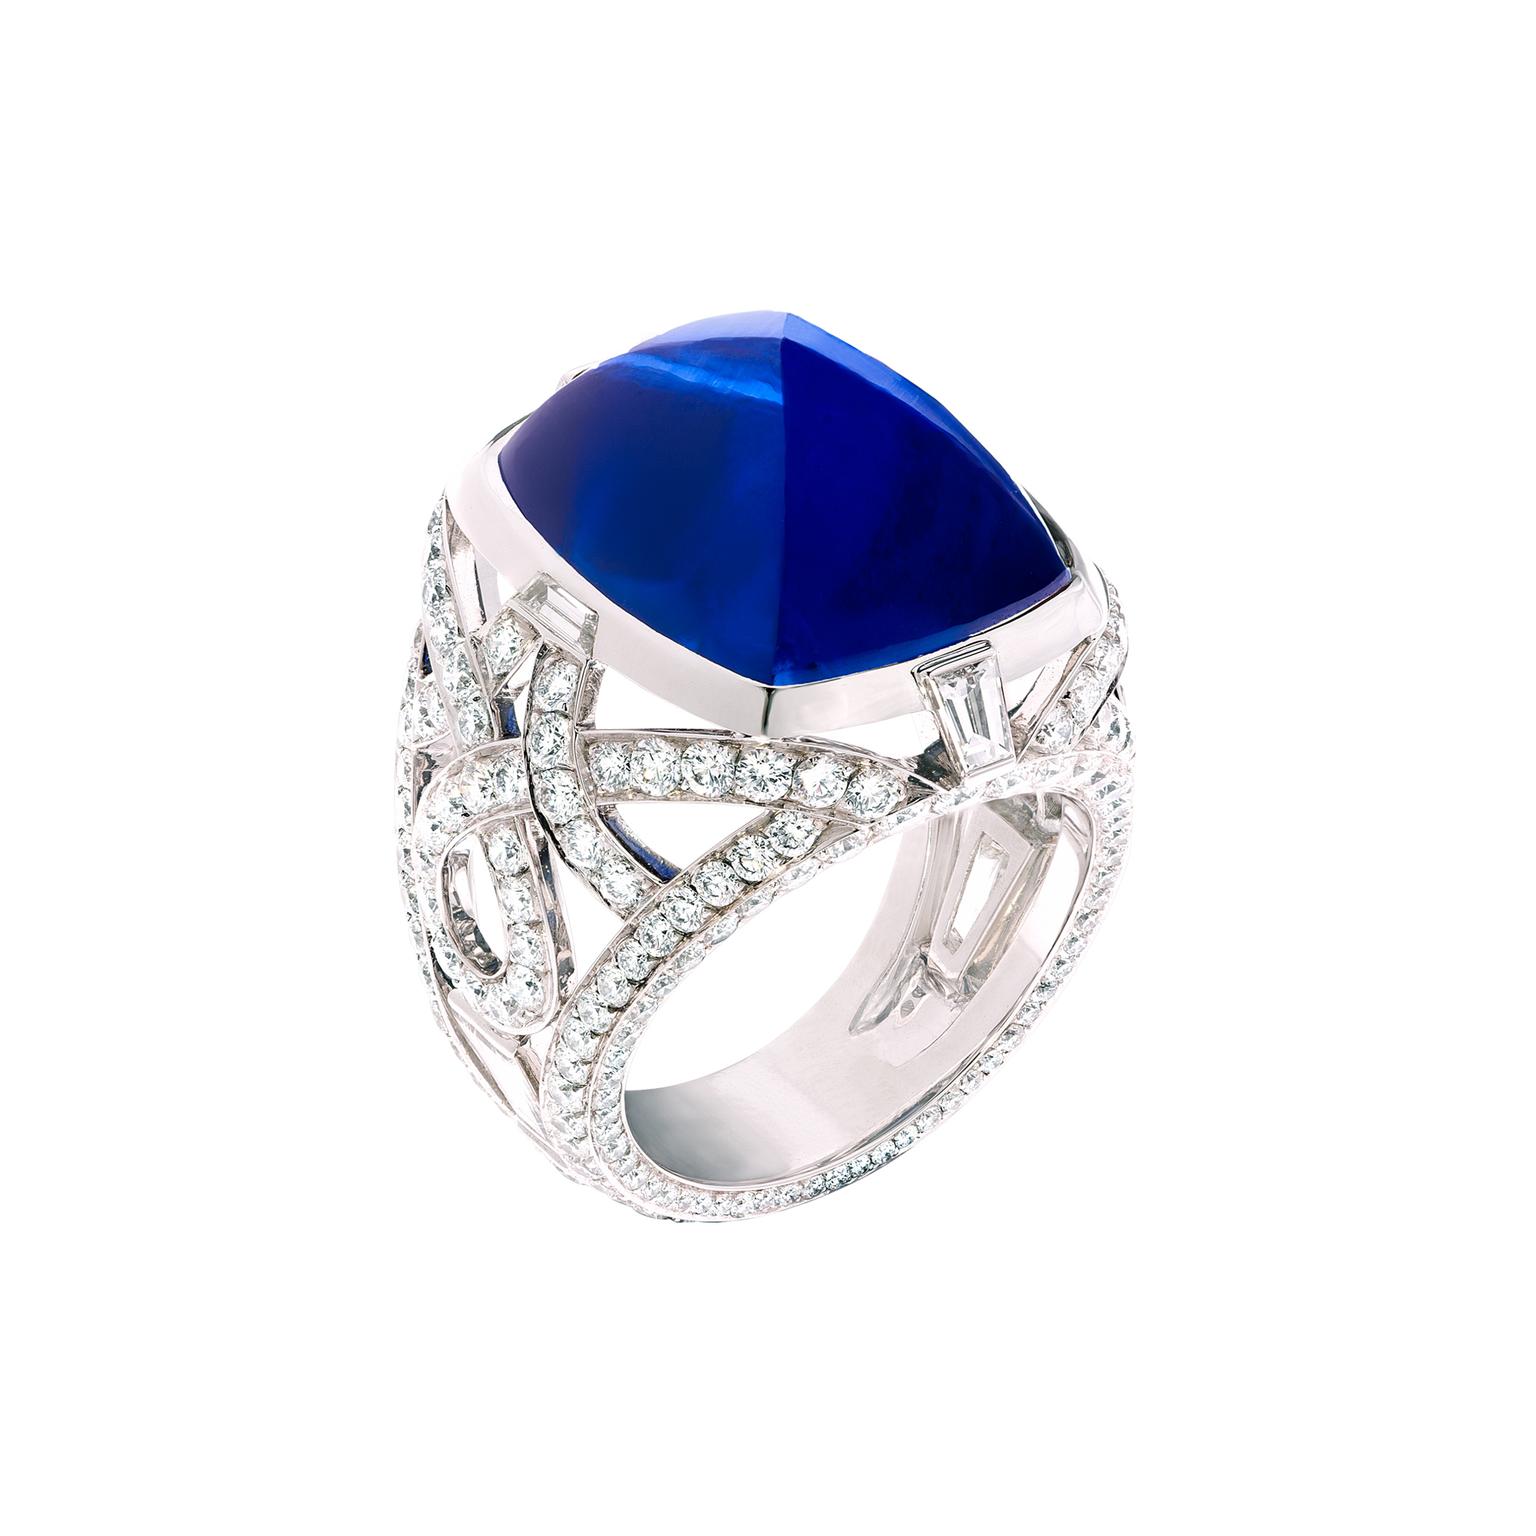 Fabergé Devotion cabochon sapphire ring